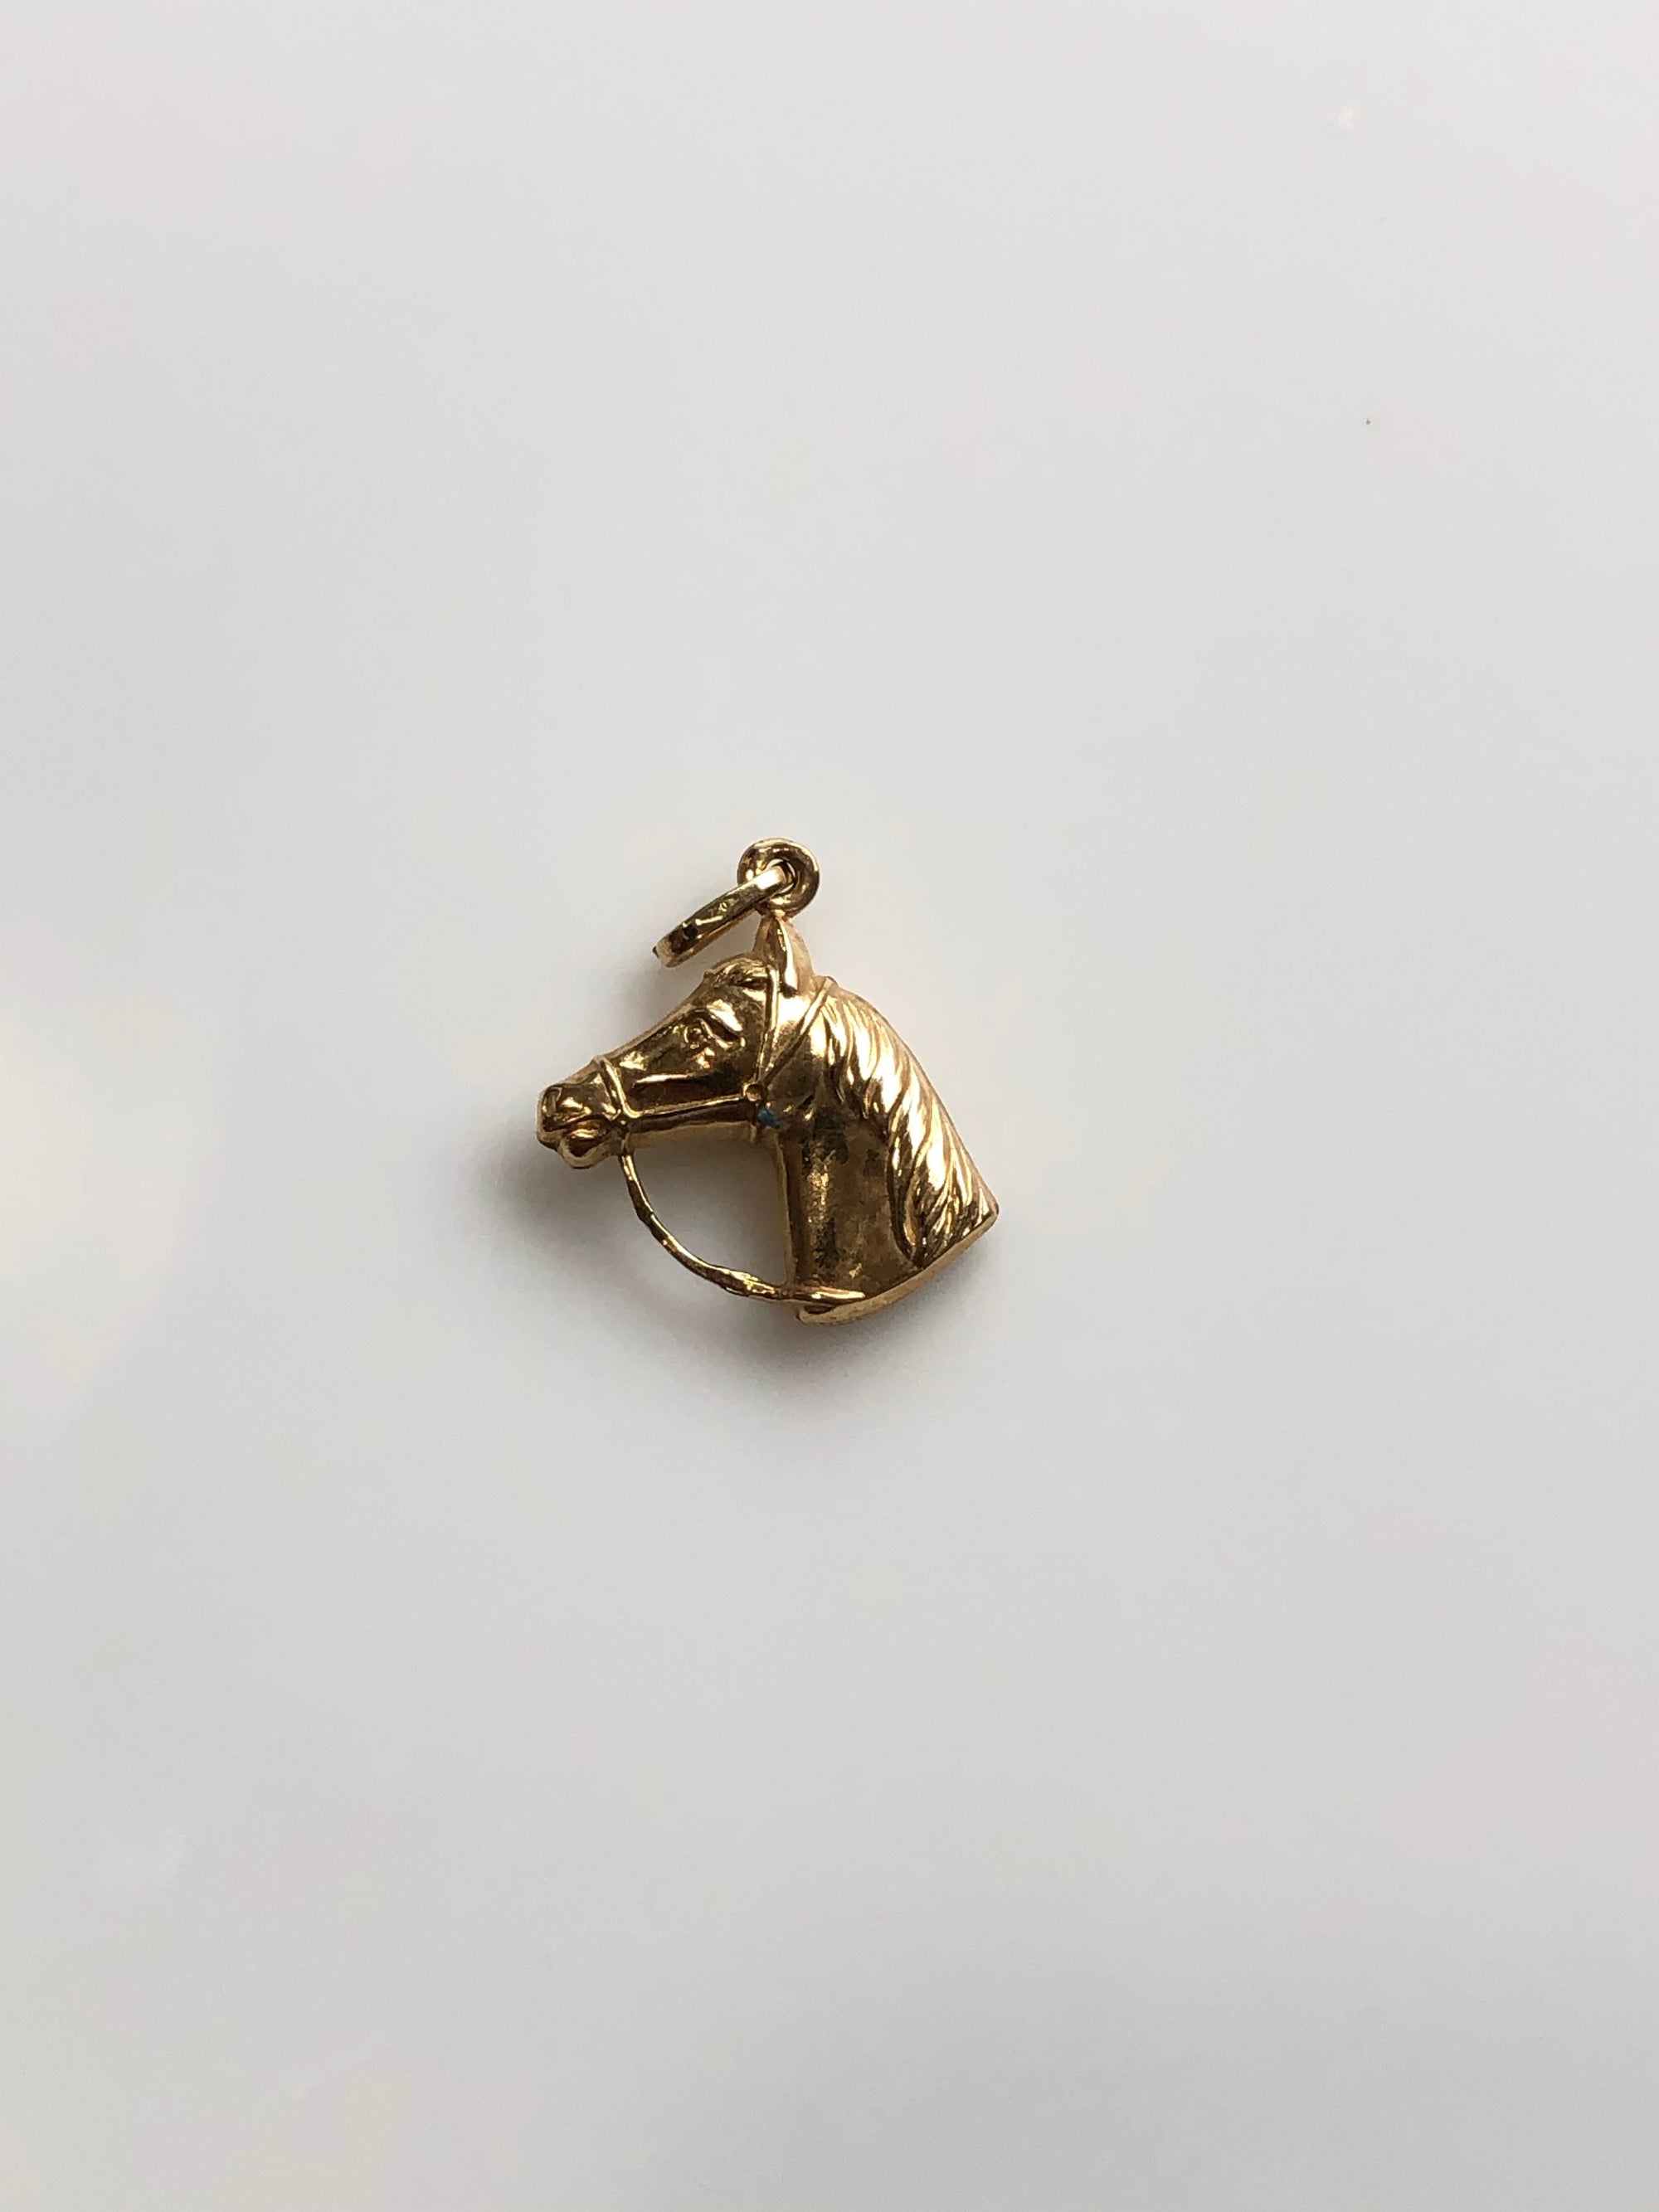 Vintage 18k Gold Horse Charm